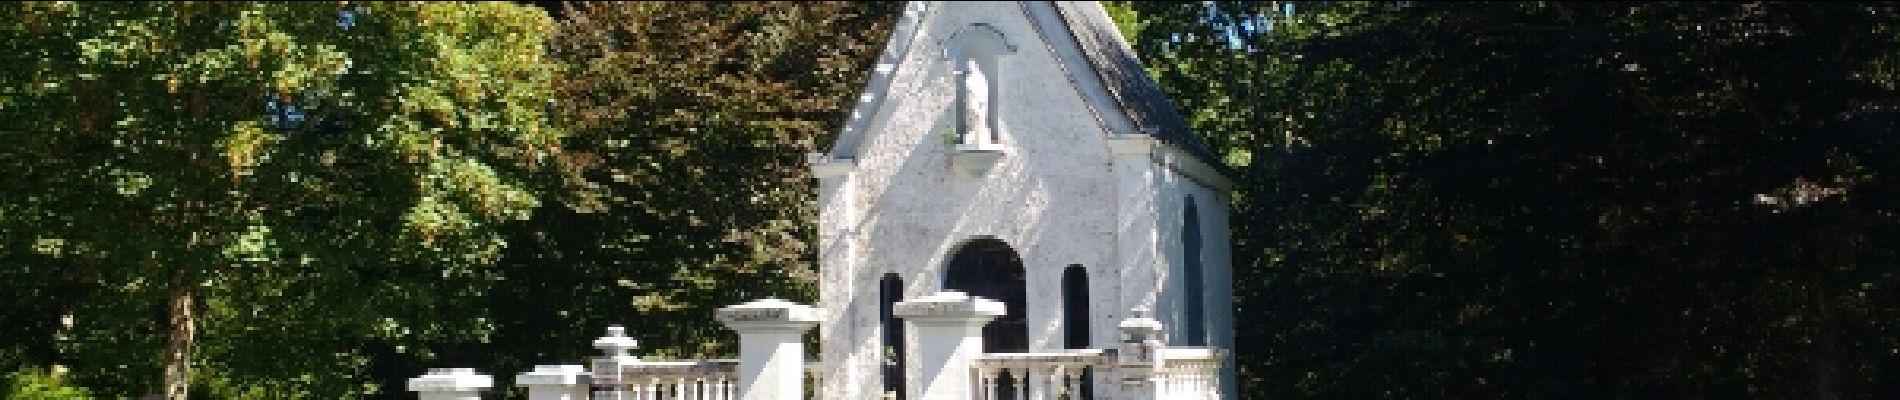 POI Habich - Chapelle de Bonhomme - Photo